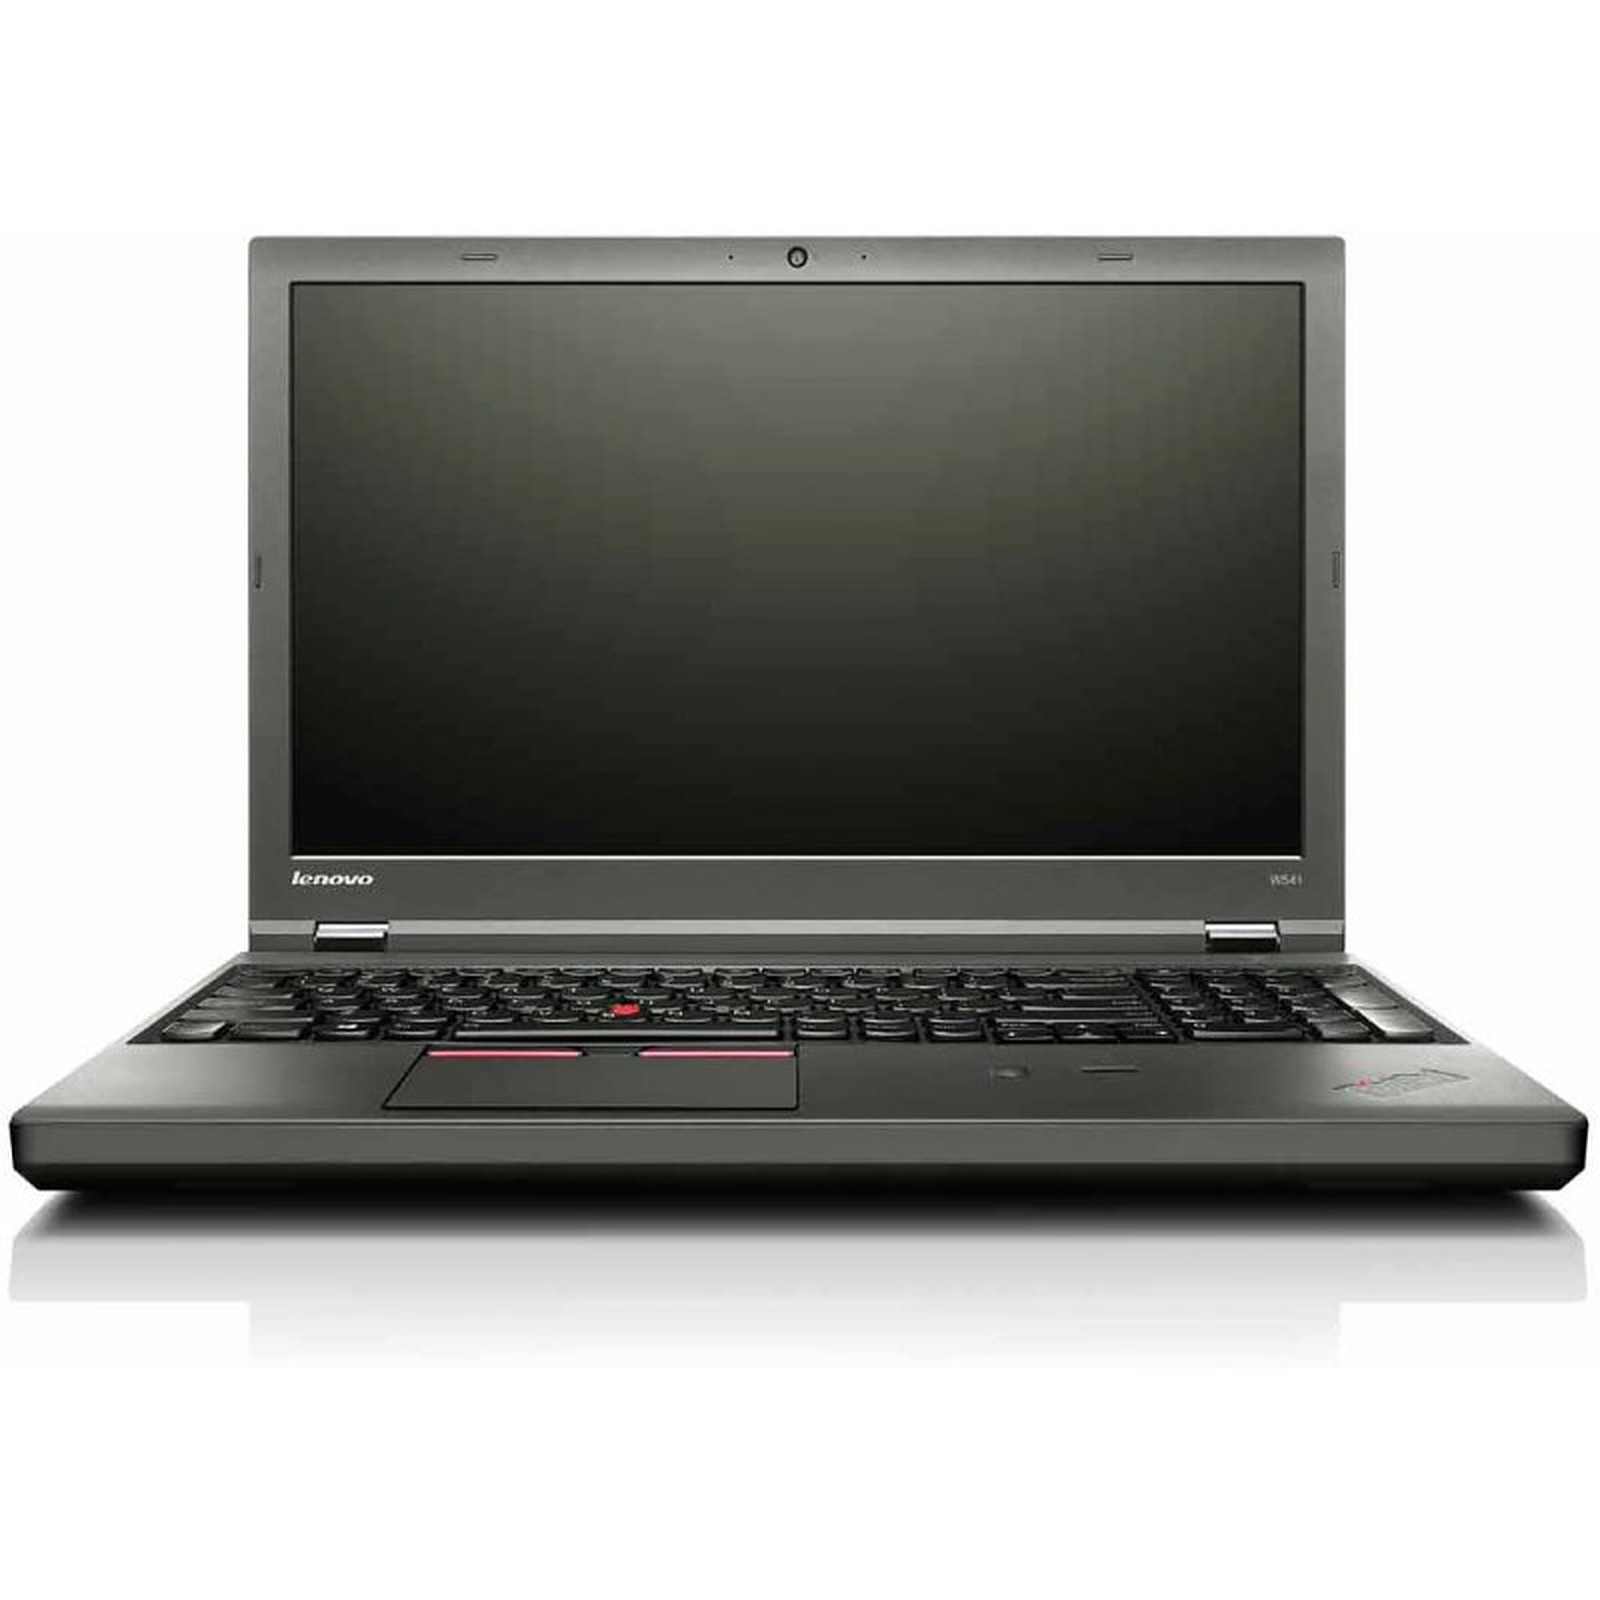 Lenovo ThinkPad W541 · Reconditionne - PC portable reconditionne Dell